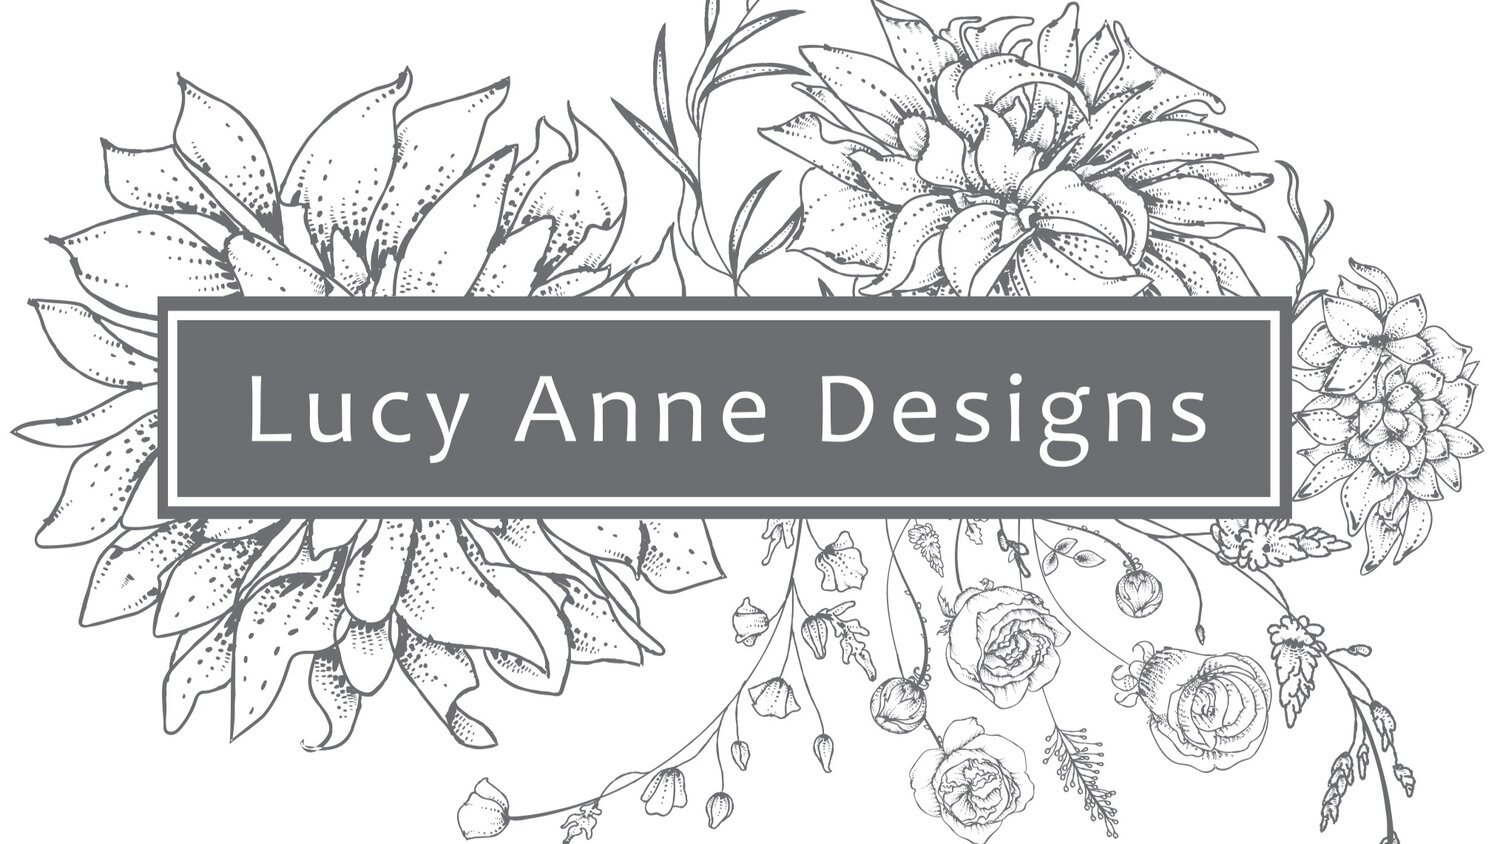 Lucy Anne Designs